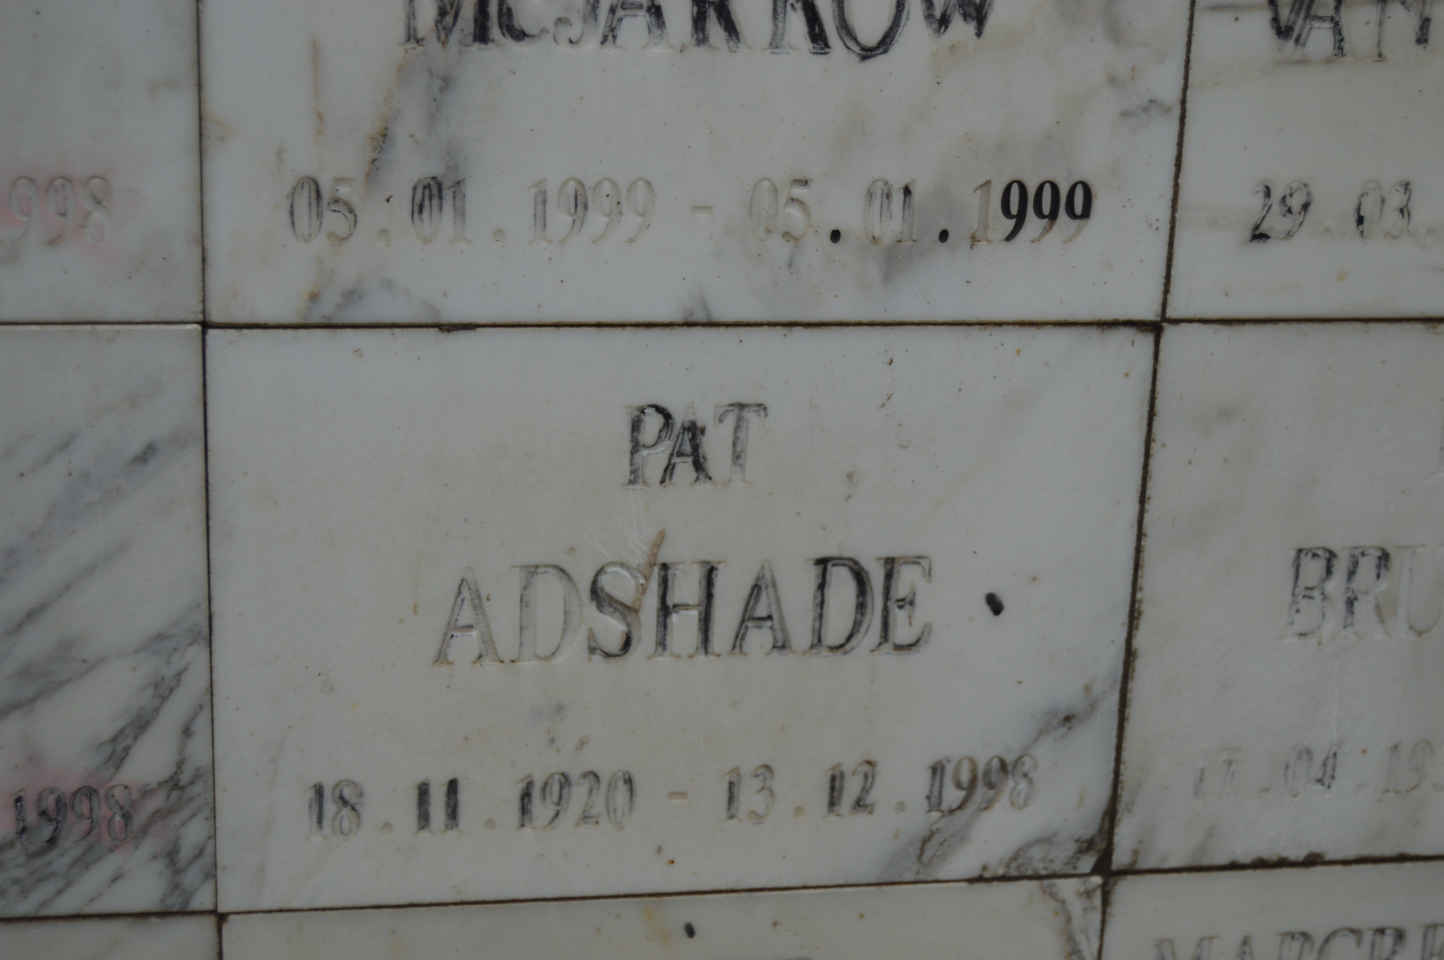 ADSHADE Pat 1920-1998